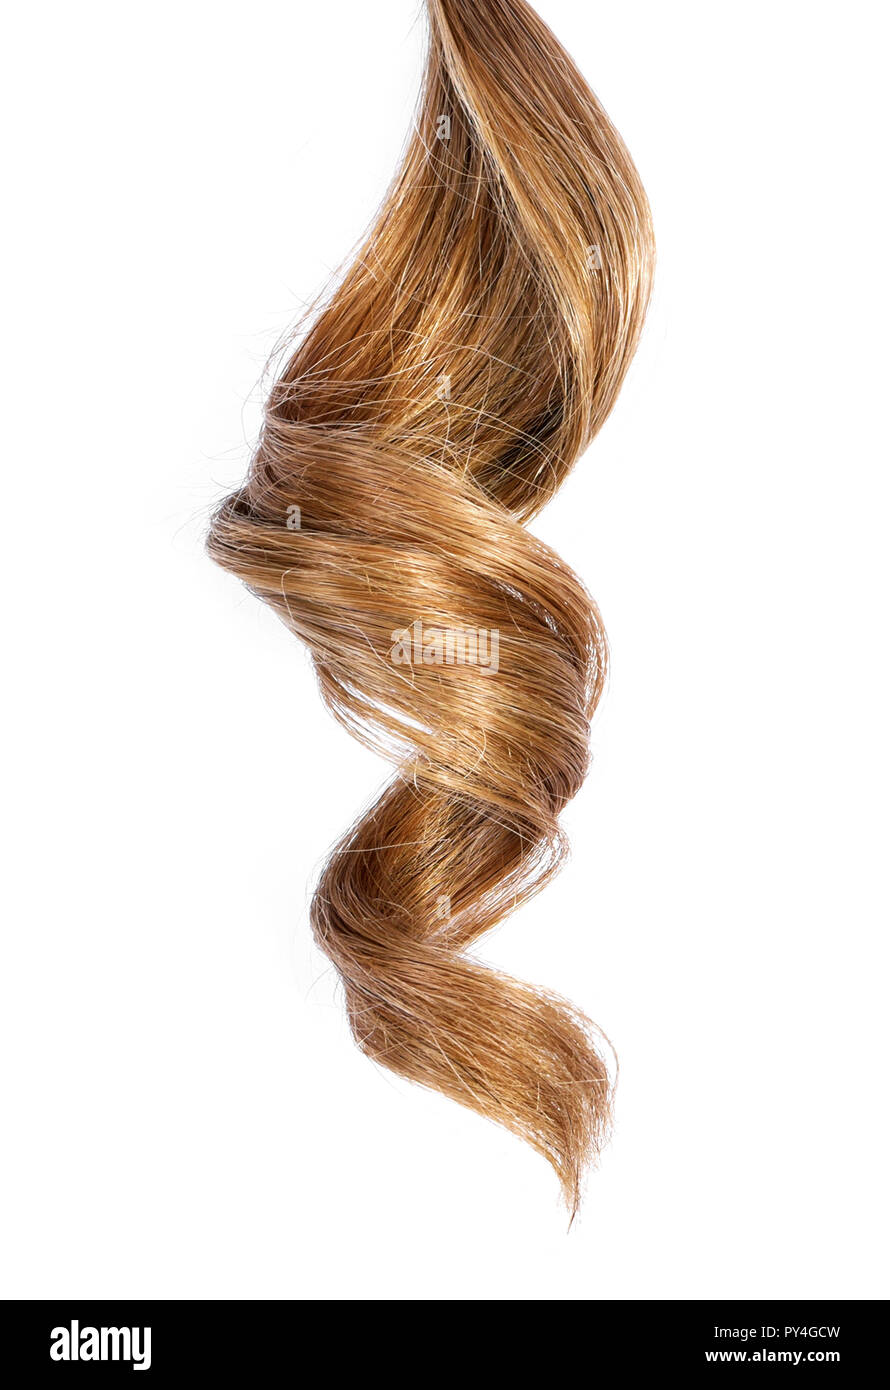 Schöne brünette Haare, auf weißem Hintergrund. Langes braunes Haar Schwanz, lockiges und gesundes Haar, design Element oder die Haare schneiden. Stockfoto